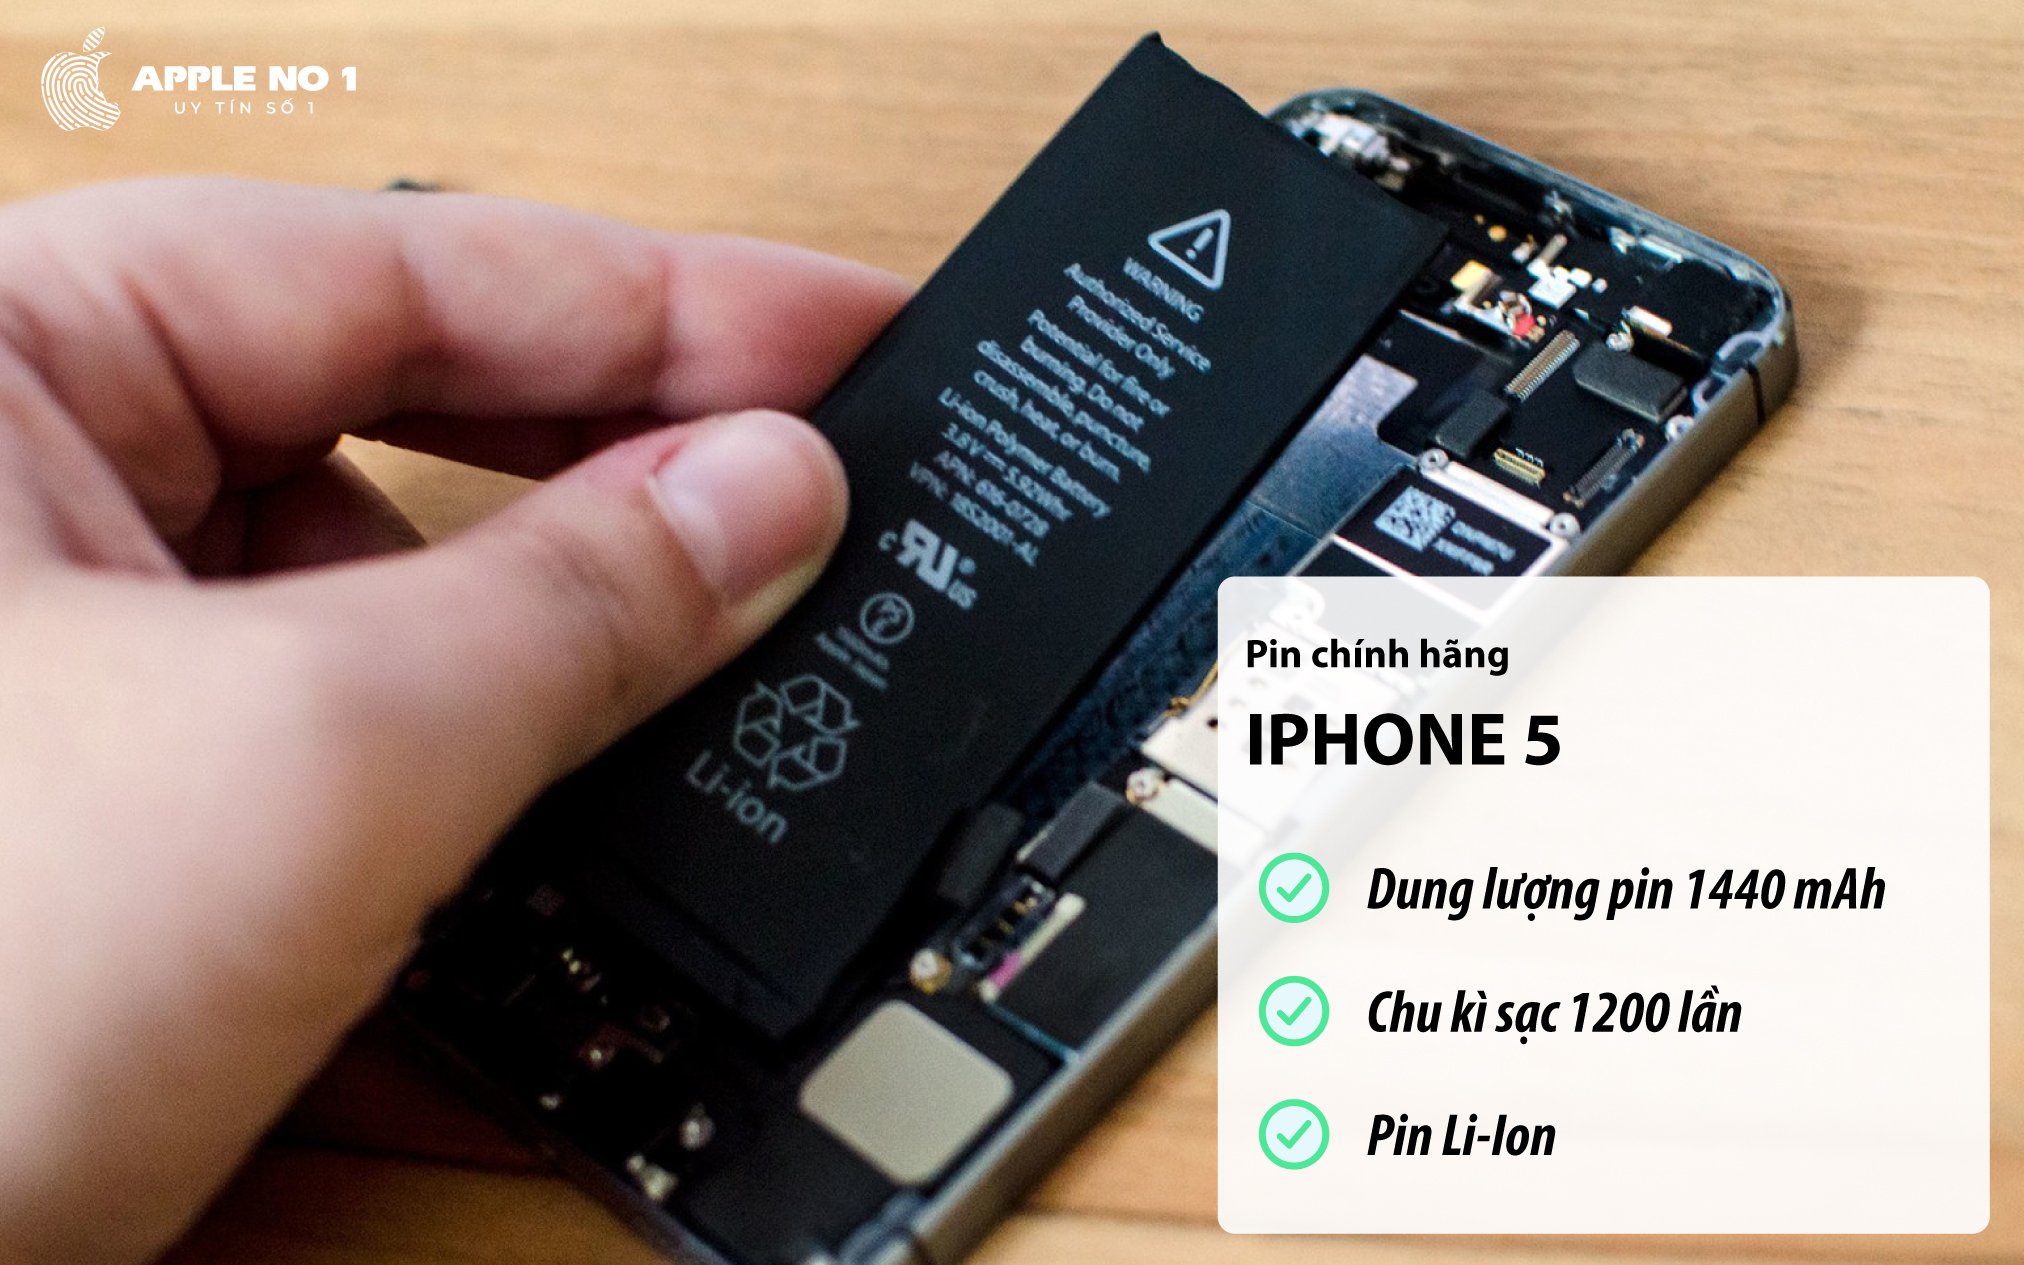 iPhone 5 dung luong pin 1440 mAh